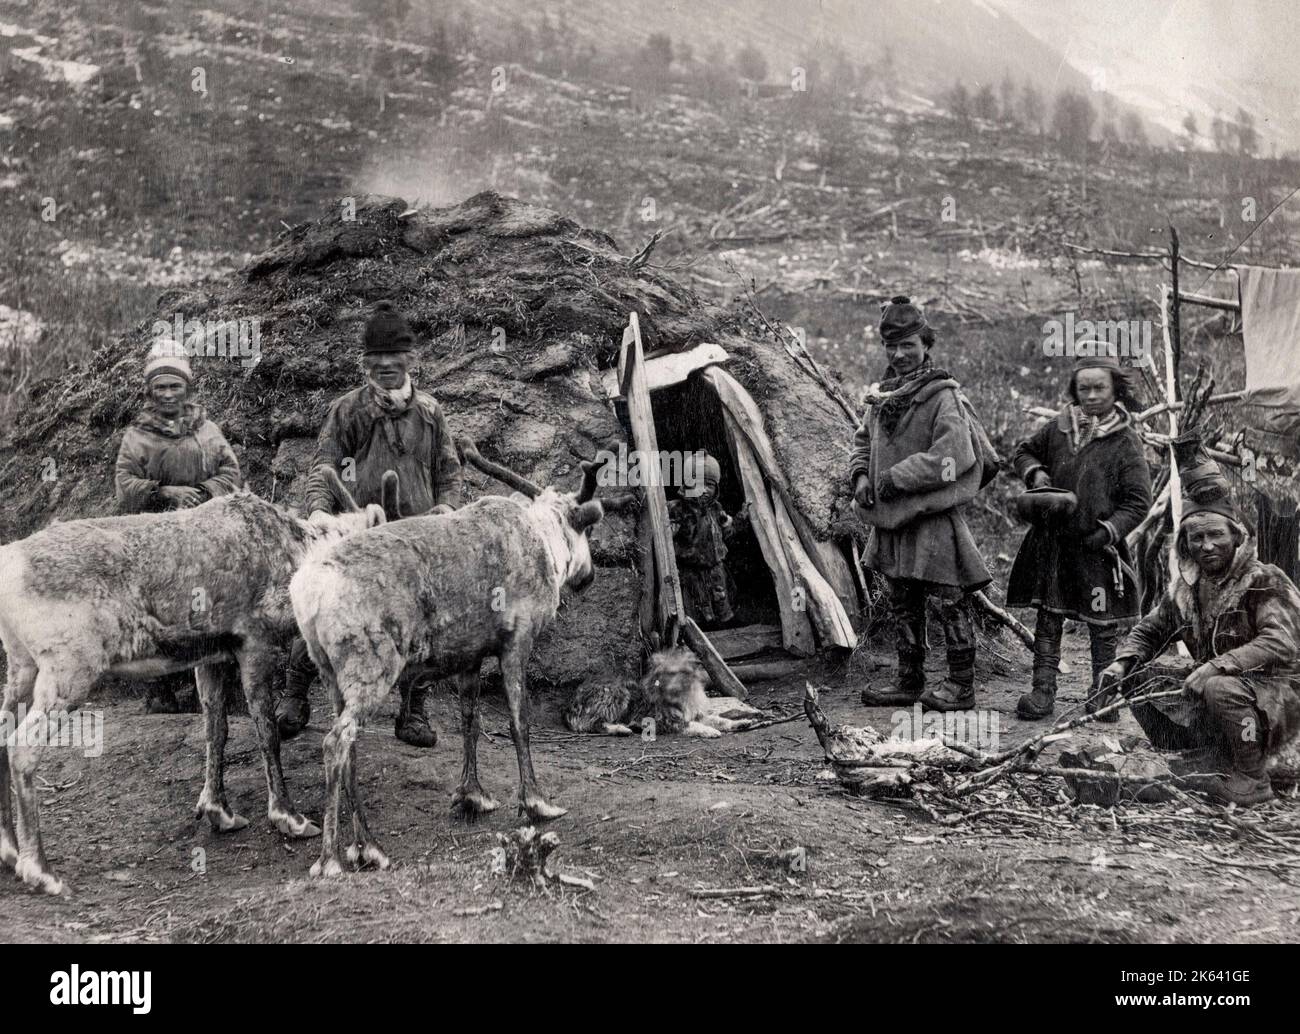 Vintage siglo 19th Fotografía: Familia indígena saami con sus renos fuera de su casa, probablemente Noruega. Históricamente conocido como lapones o lapones Foto de stock